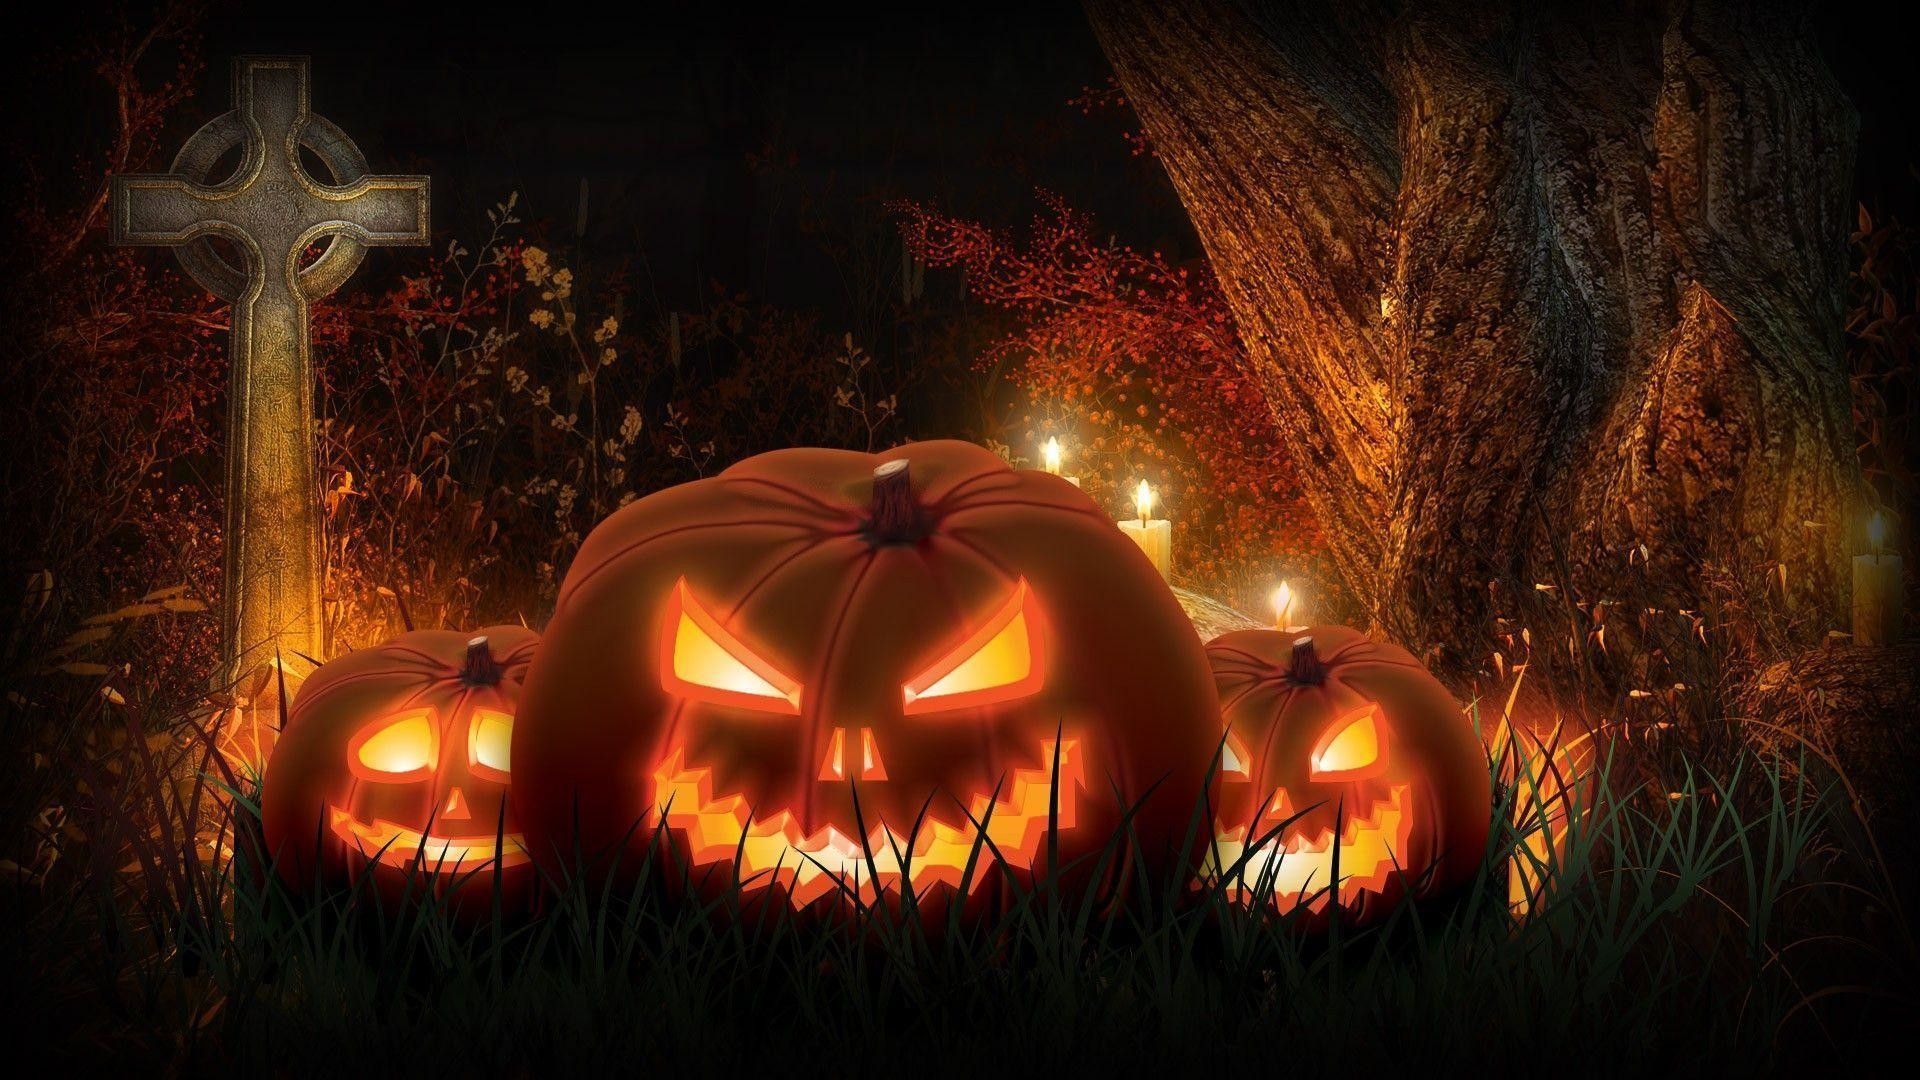 Scary Halloween Pumpkin Wallpaper 1080p. Pumpkin wallpaper, Halloween pumpkin image, Scary halloween pumpkins